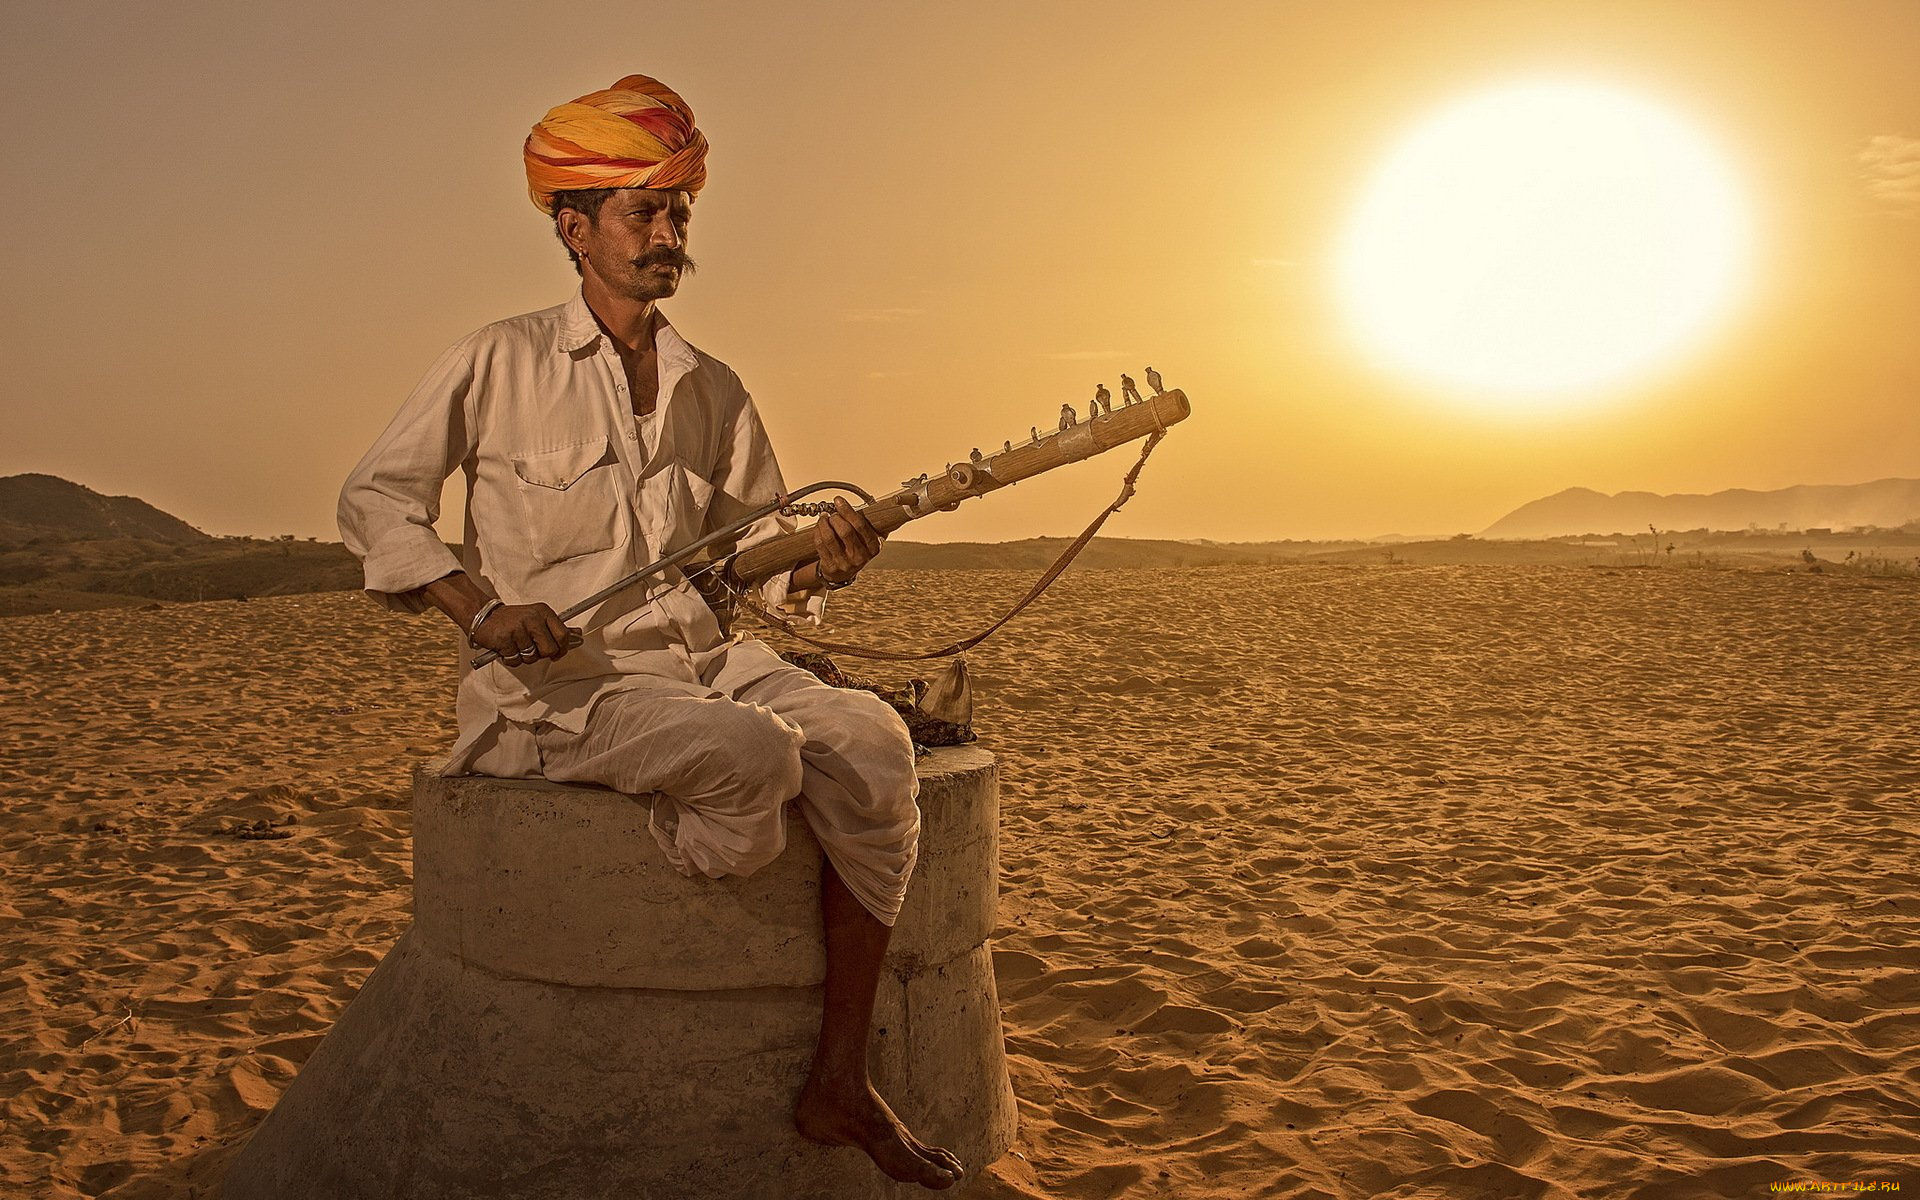 музыка, -другое, инструмент, мужчина, тюрбан, песок